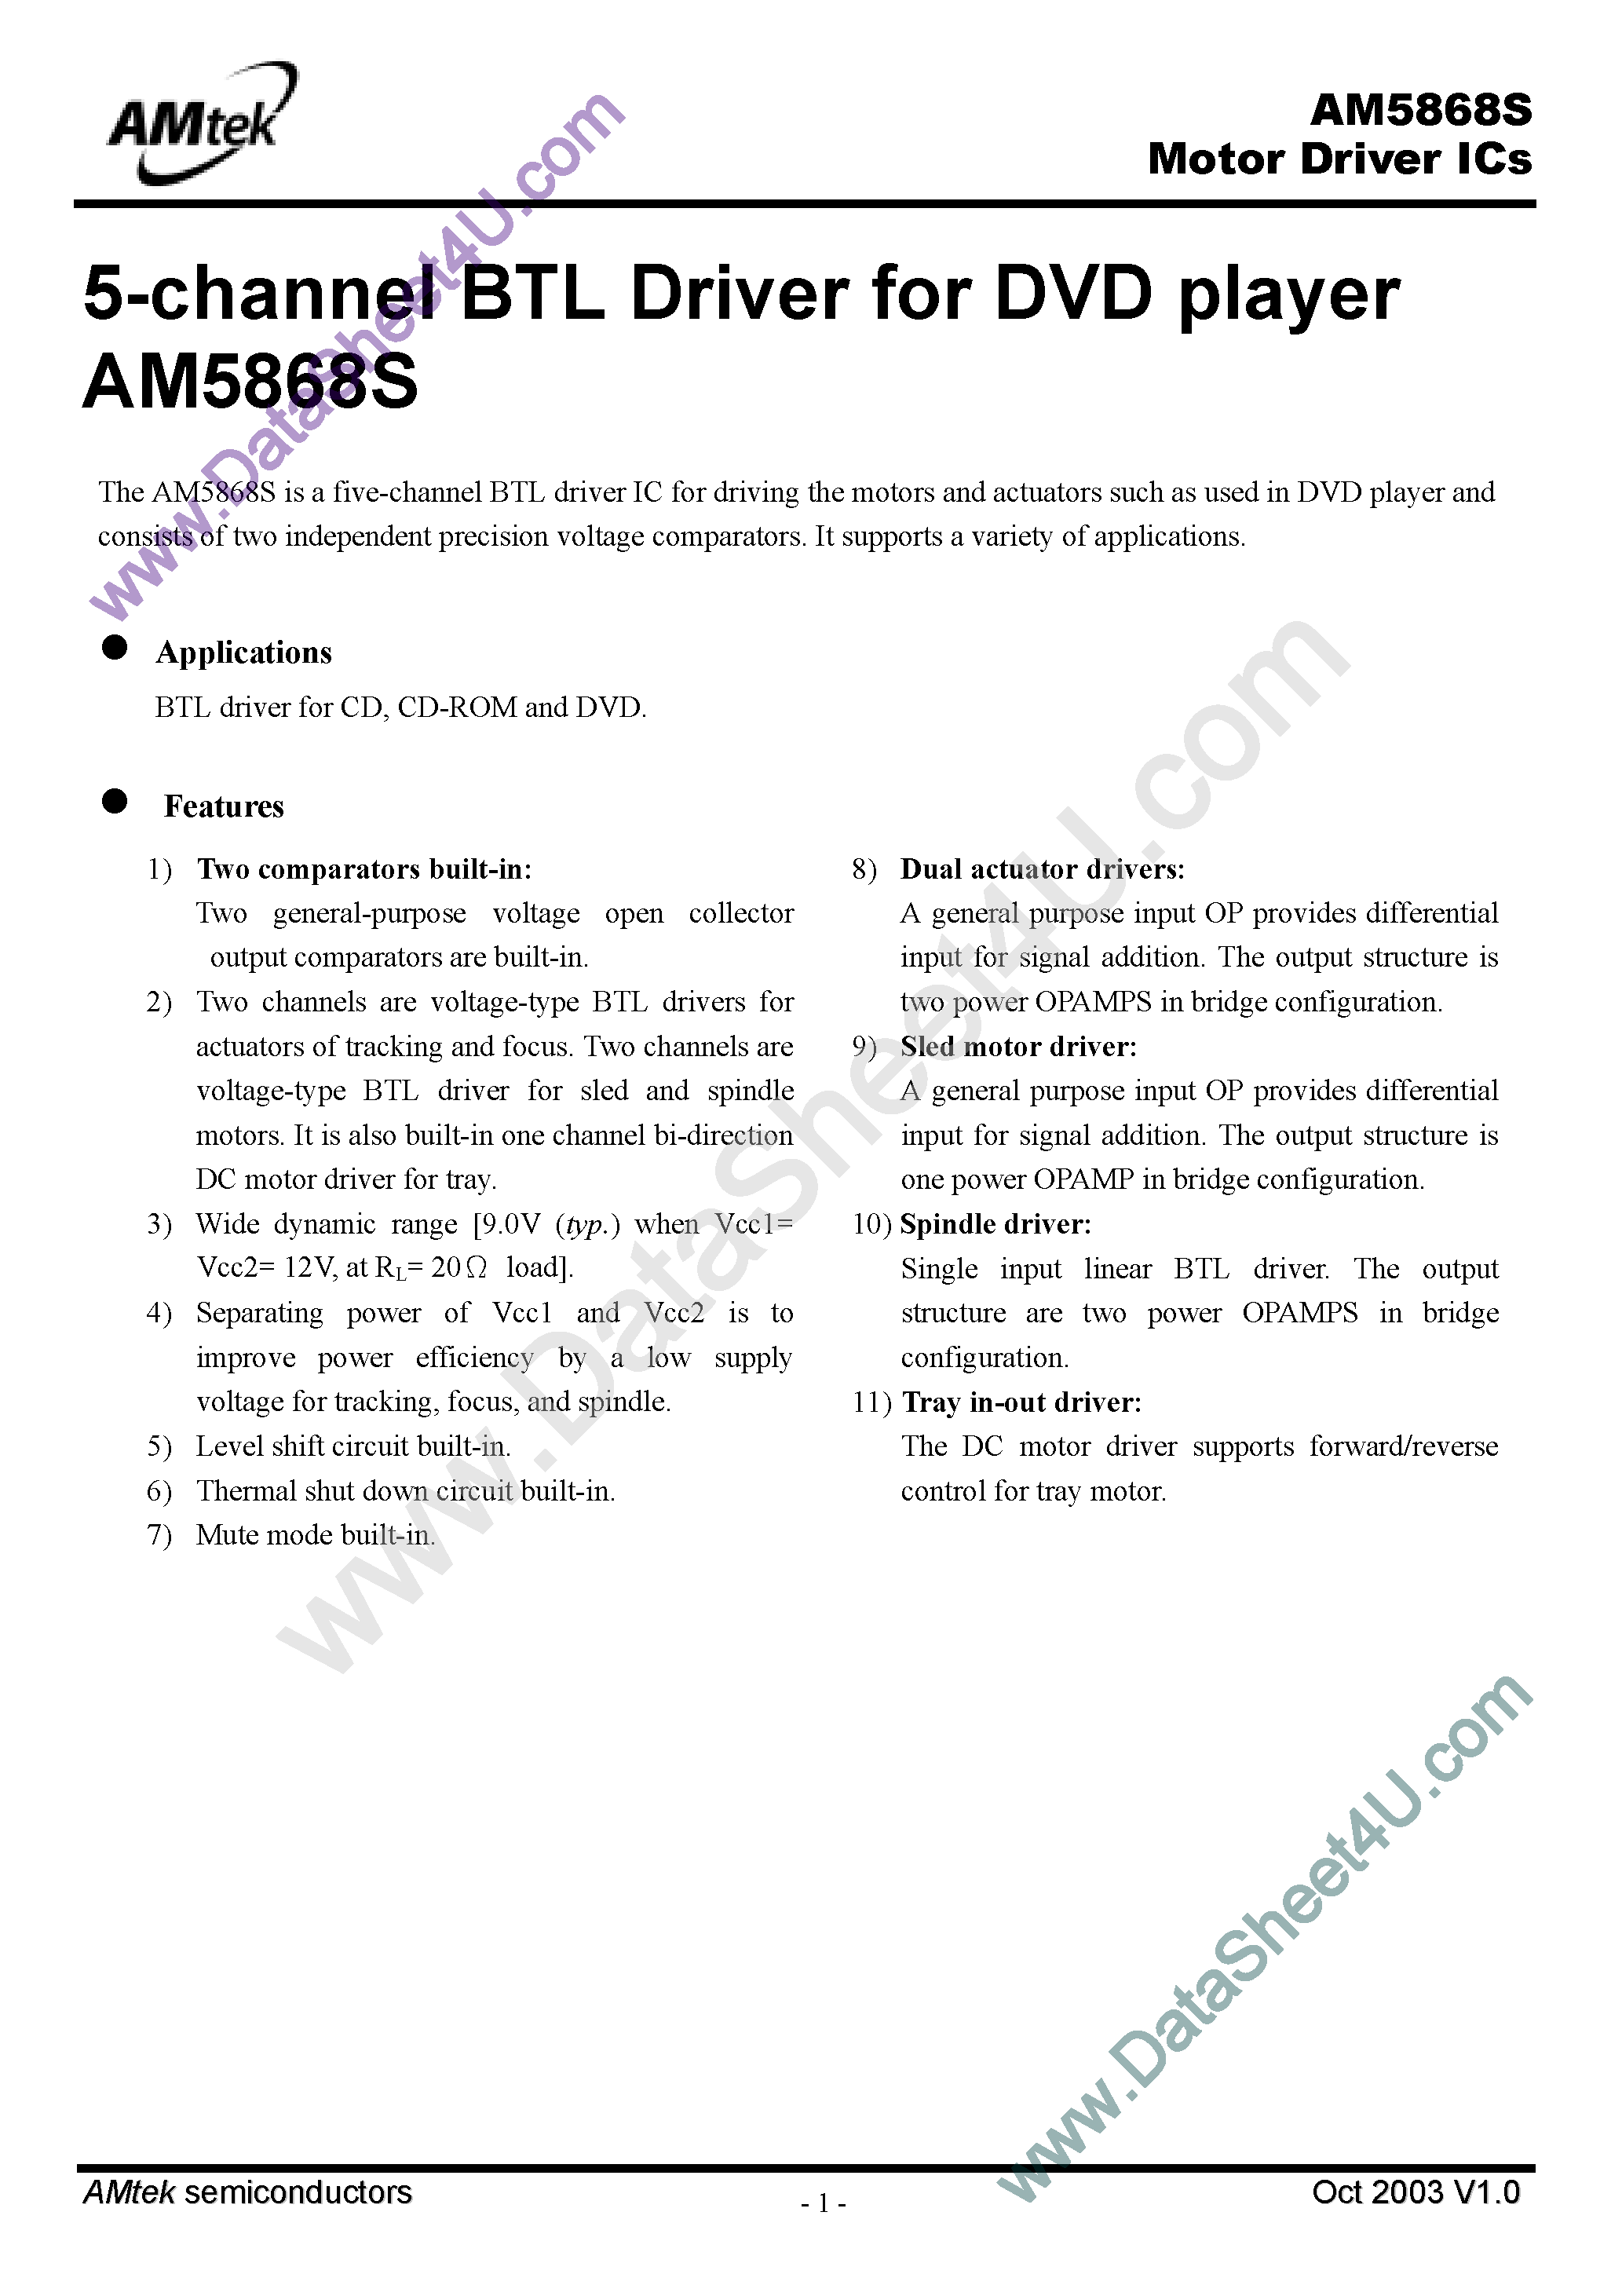 Даташит AM5868S - Motor Driver ICs / 5-Channel BTL Driver страница 1